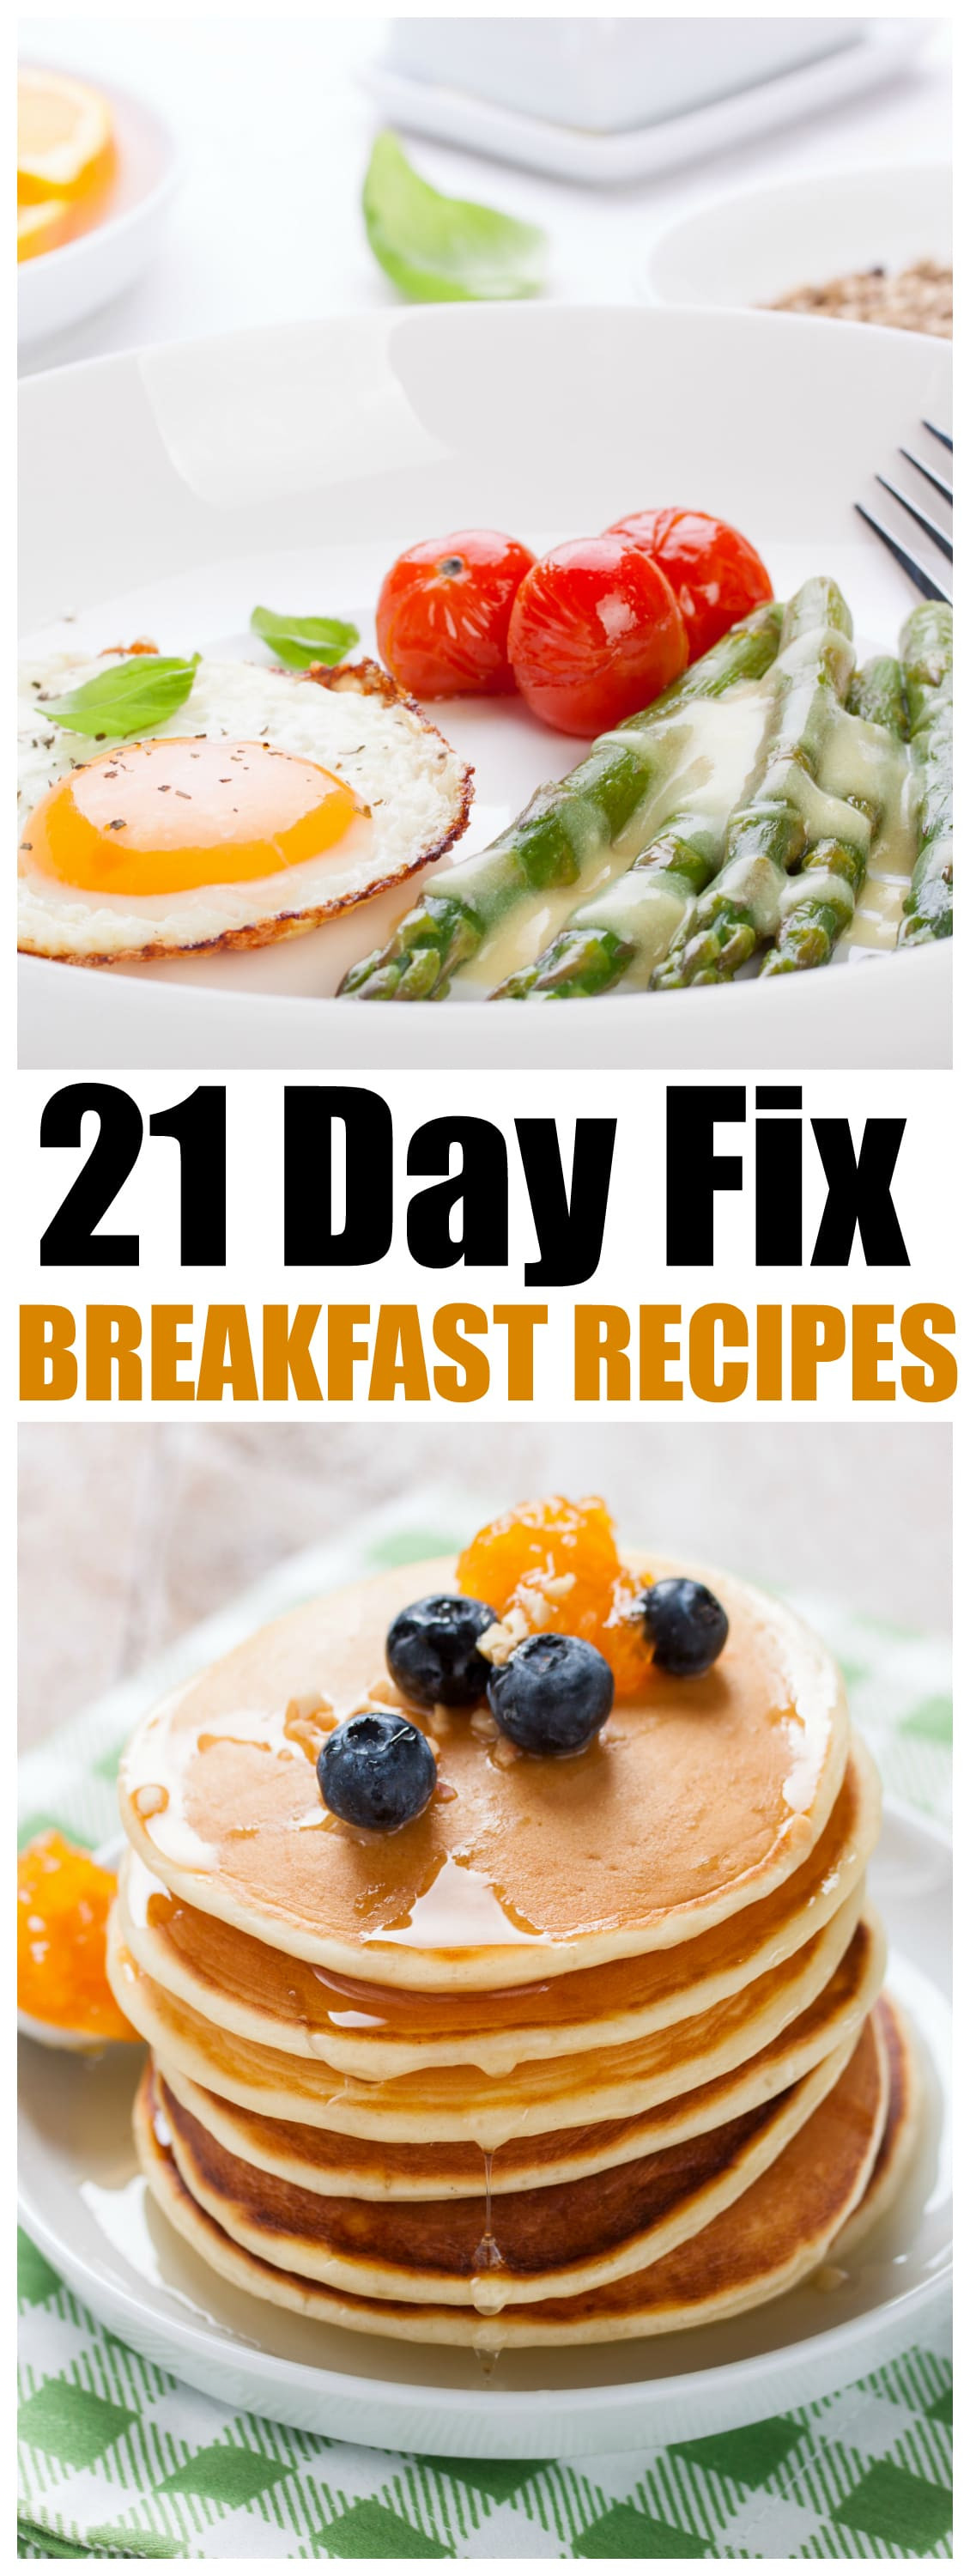 21 Day Fix Recipes Breakfast
 21 Day Fix Breakfast Recipes MomDot